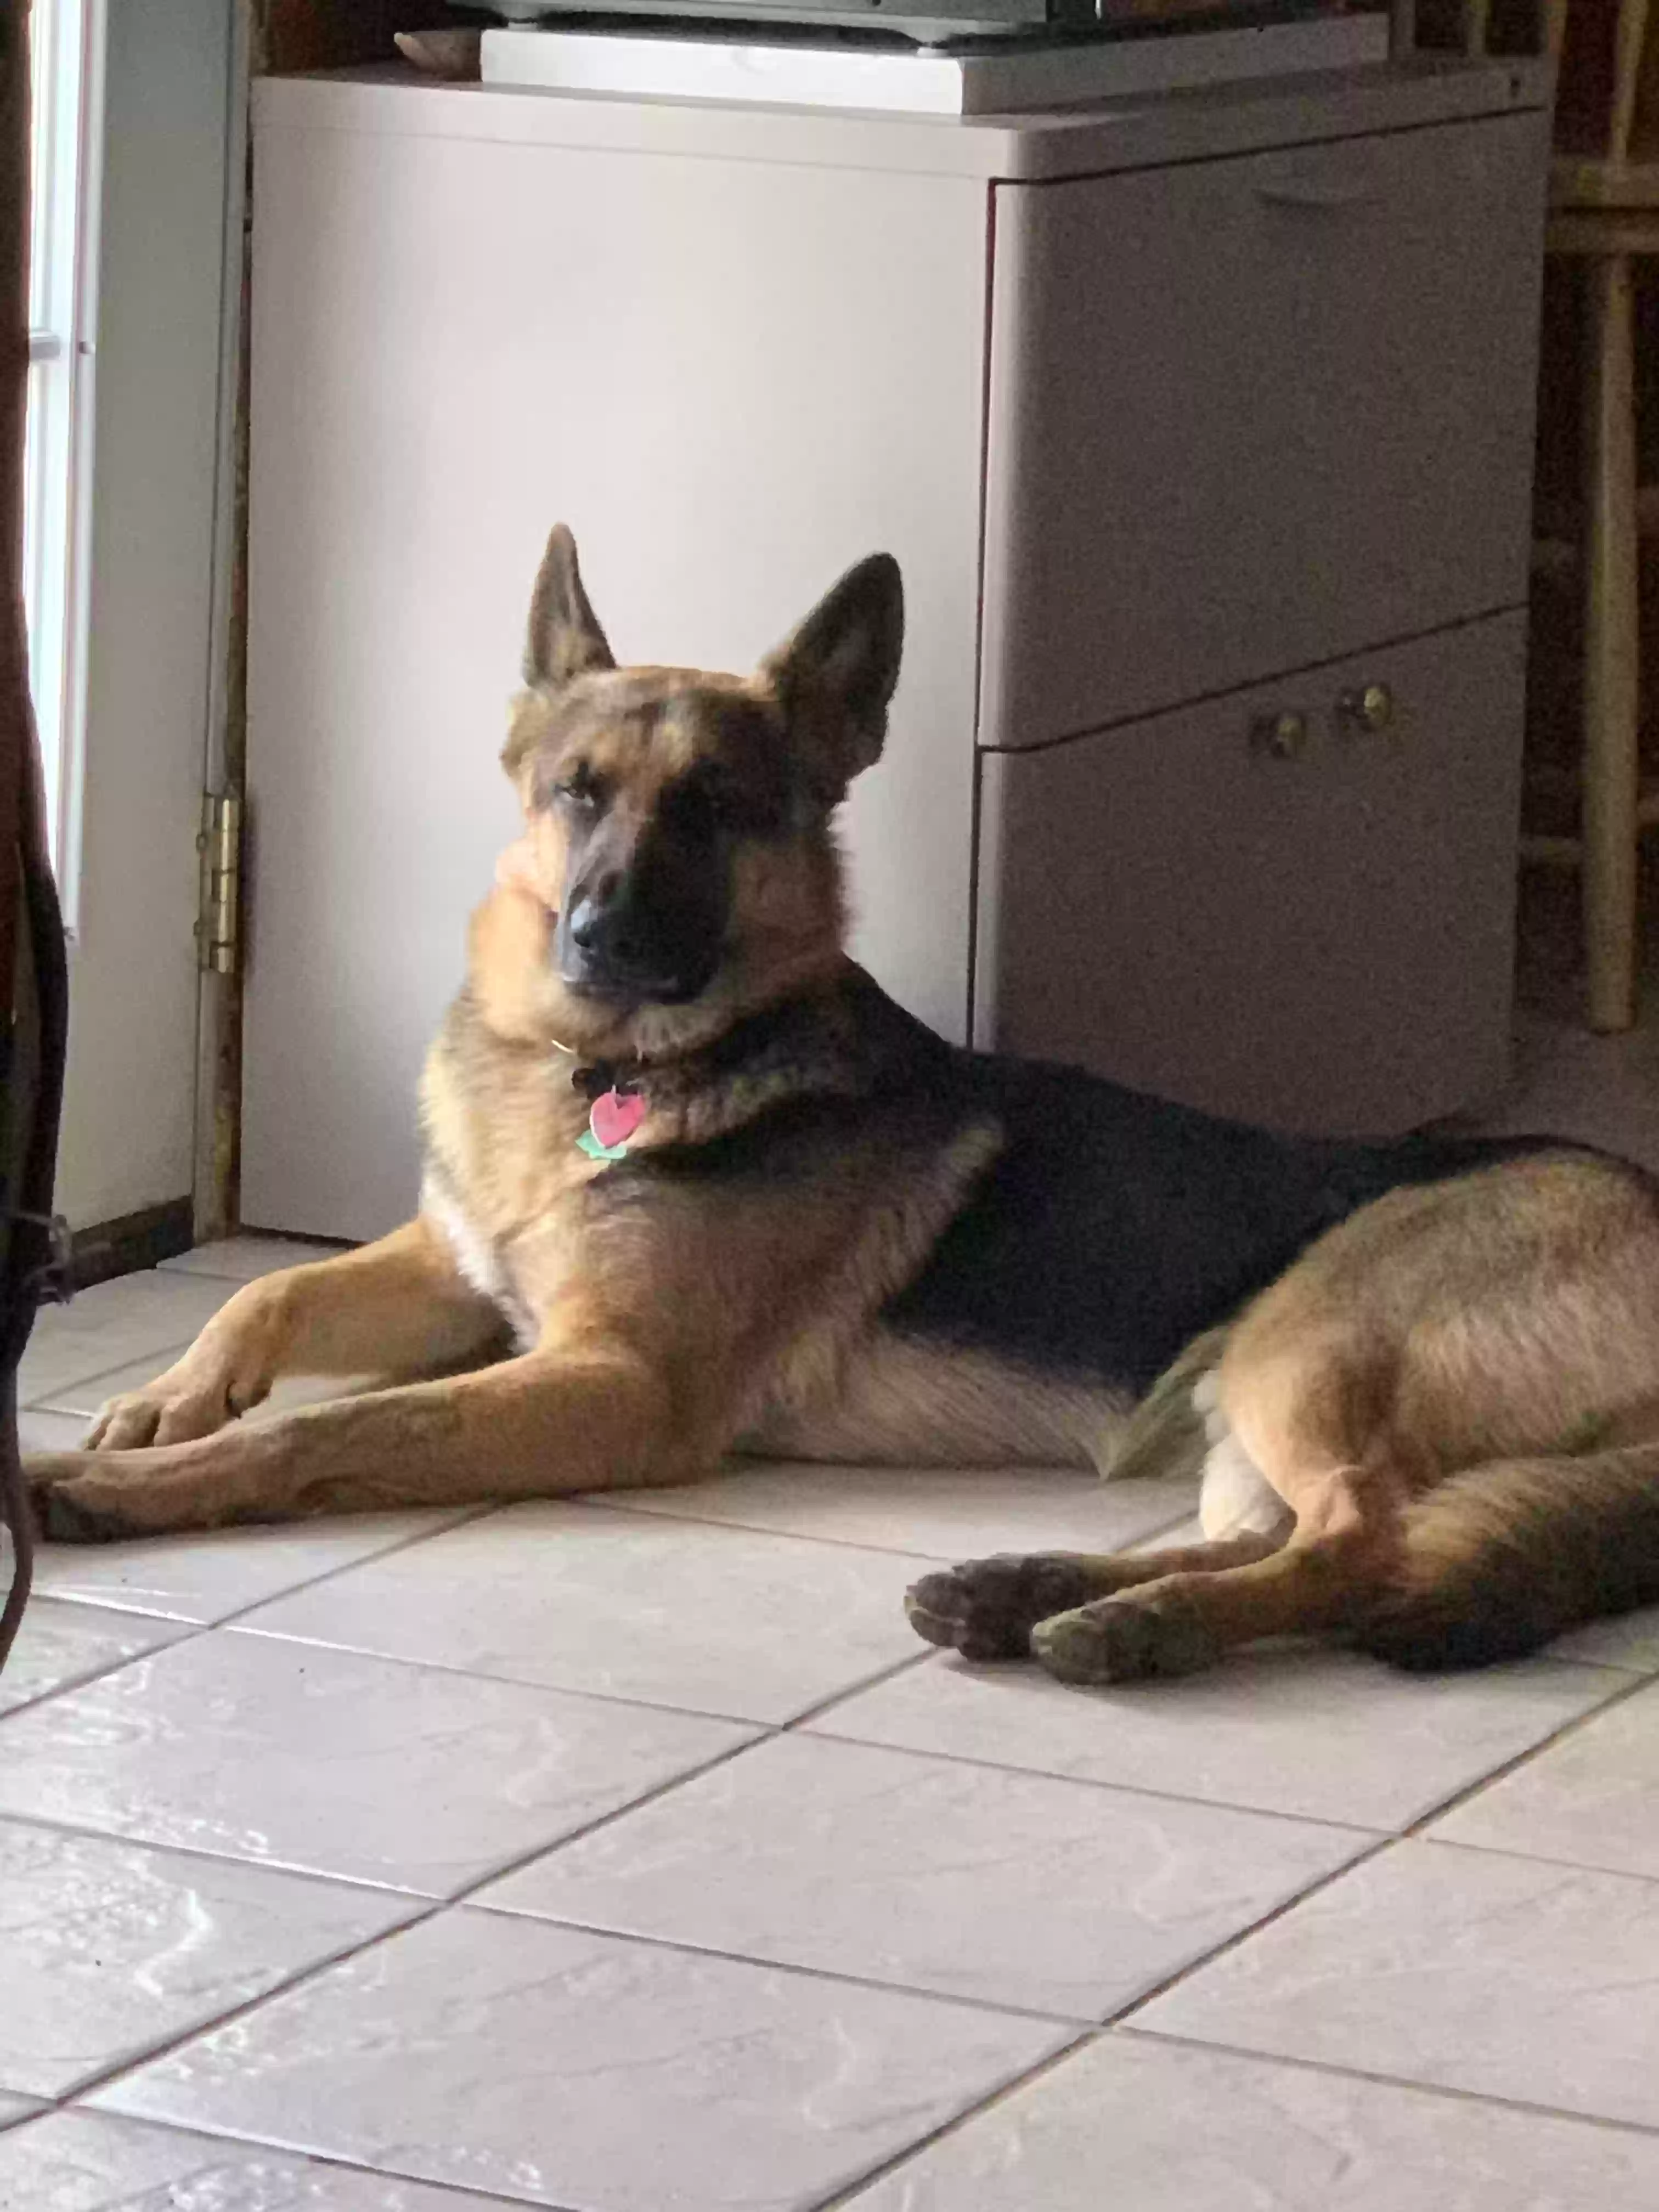 adoptable Dog in Irving,TX named Apollo